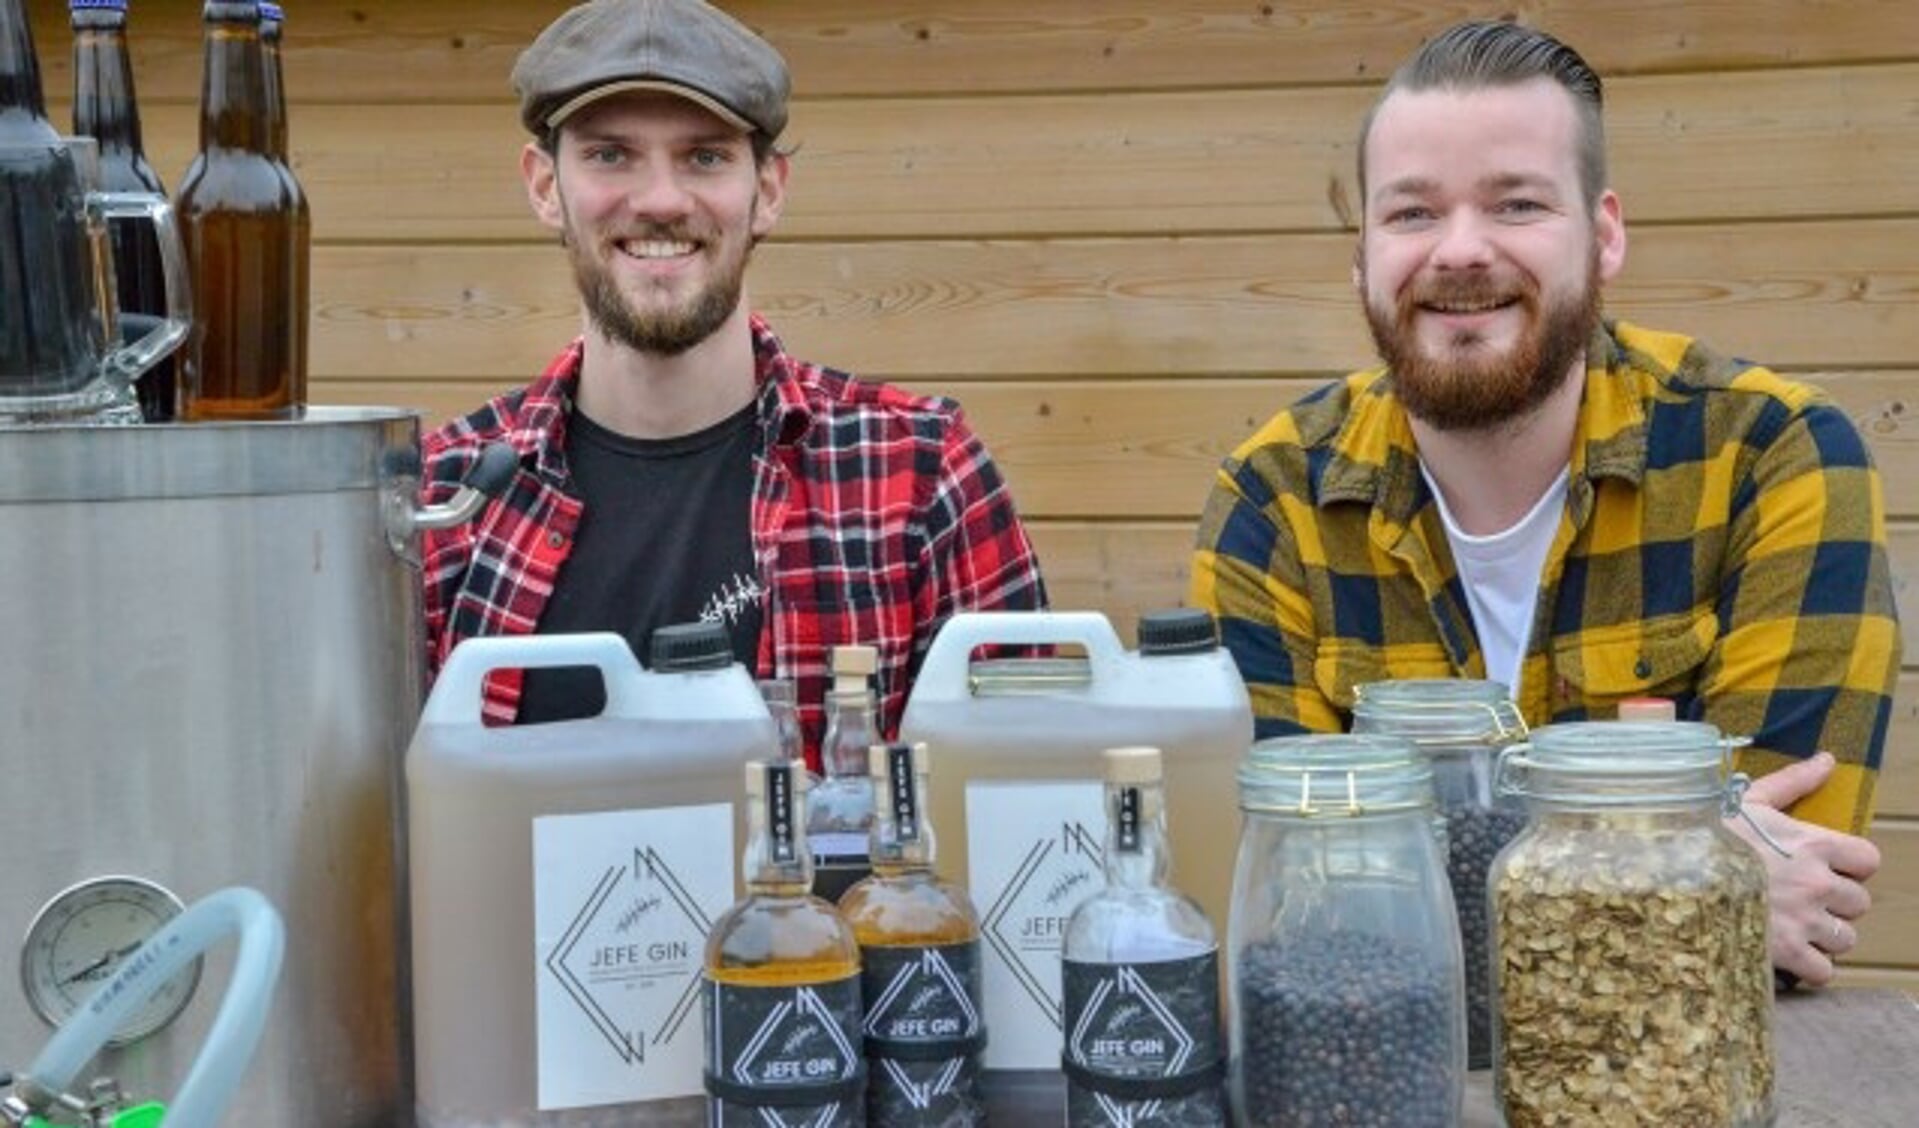 Alex Burgers brouwt bier en Justin Verburgt stookt gin. Zij zoeken een ruimte waar zij verder kunnen groeien. (Foto: Paul van den Dungen)